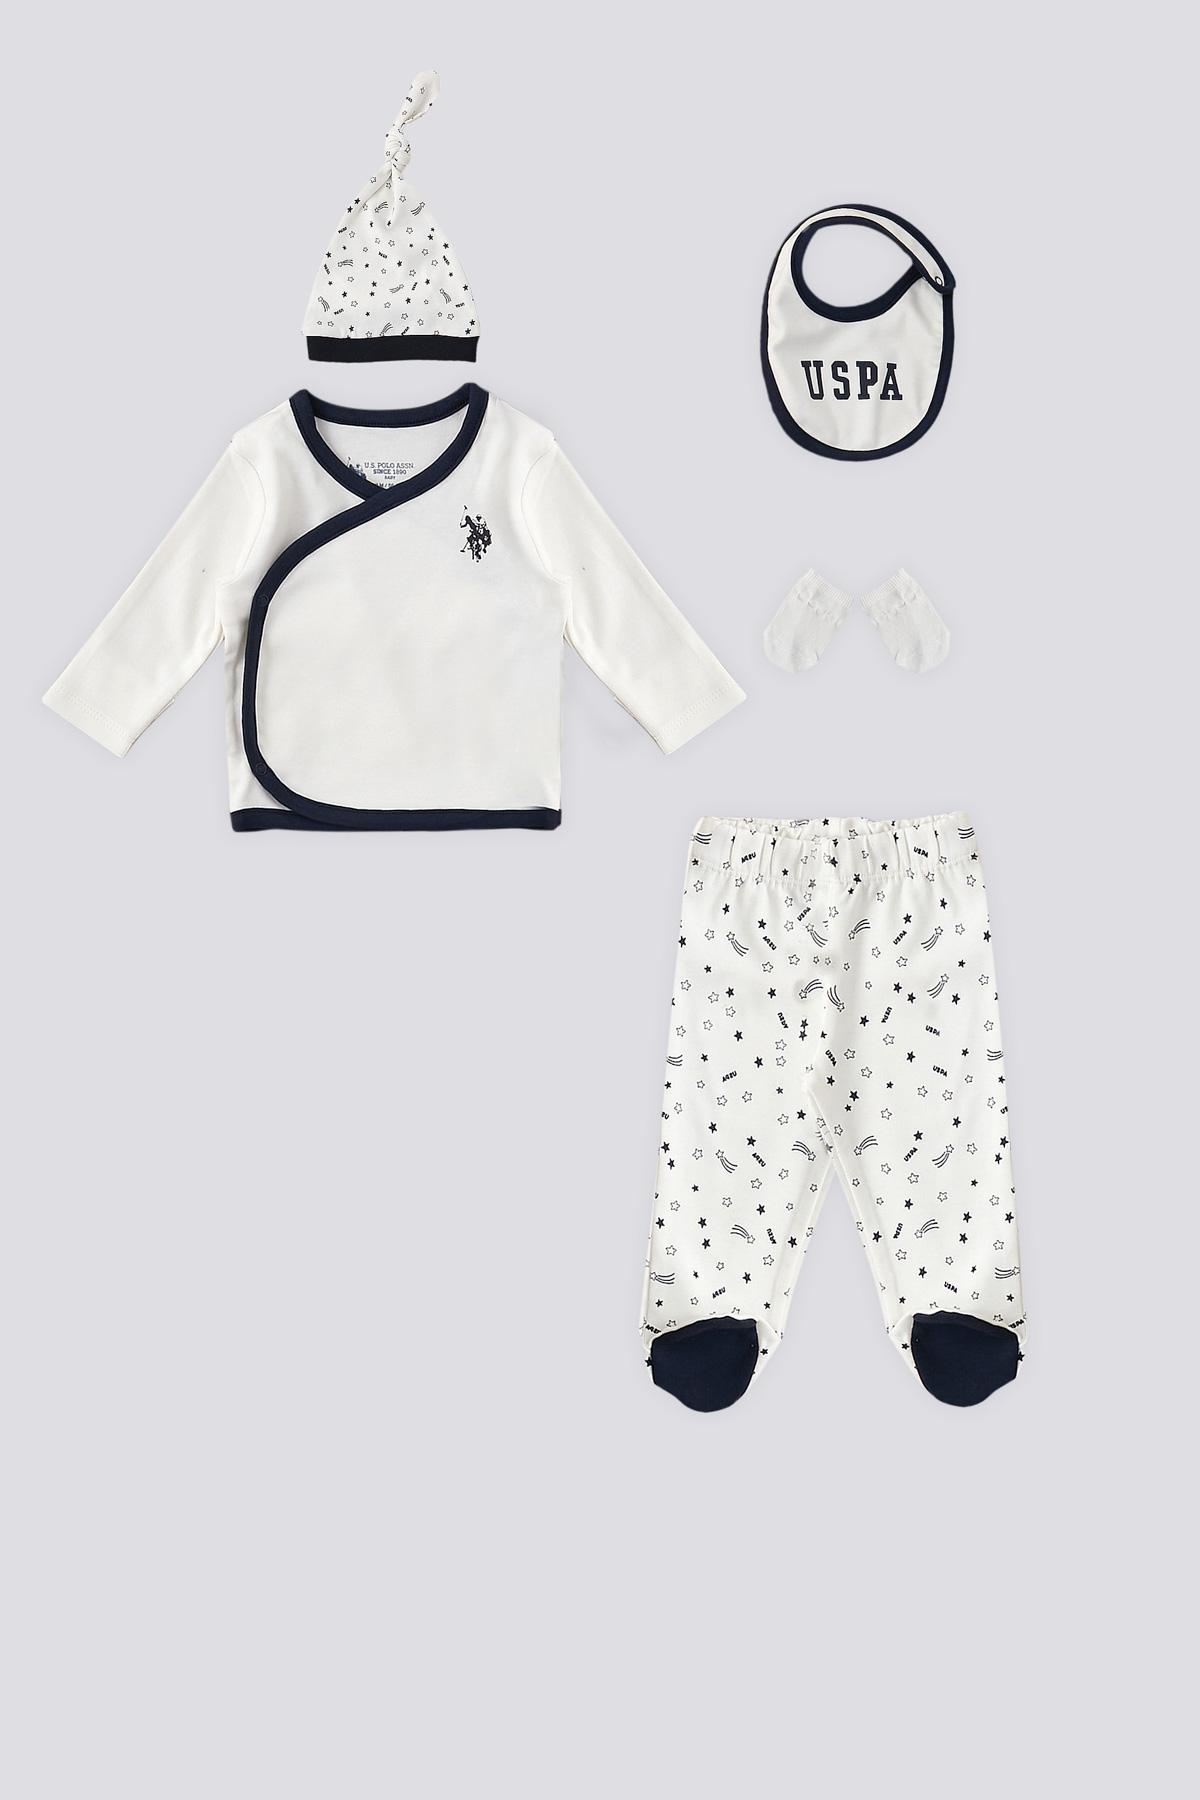 U.S. POLO ASSN. USB1416 Set za bebe, Gornji i donji deo pidžame, benkica, kapica i rukavice, Beli